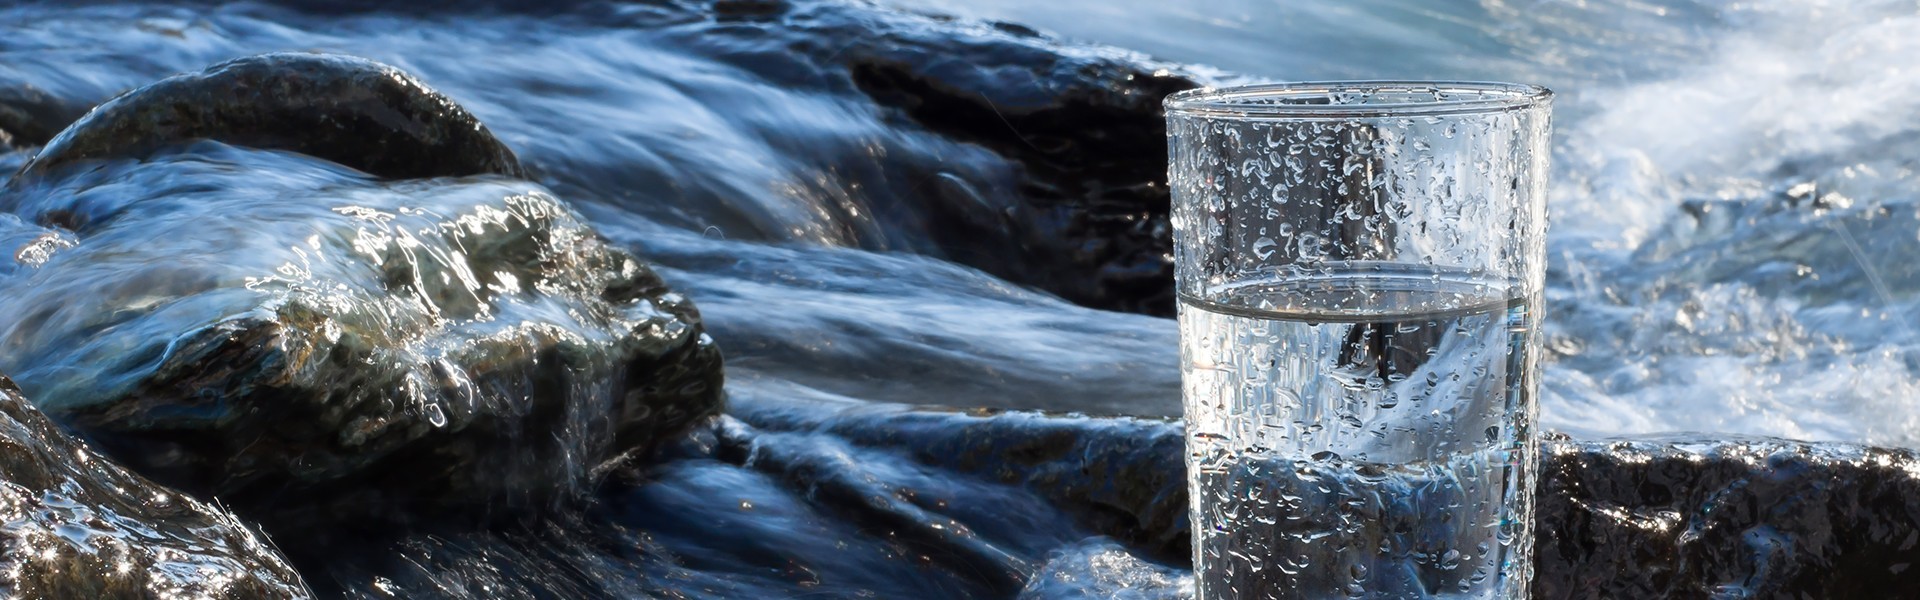 Wasser in der Natur mit Glas